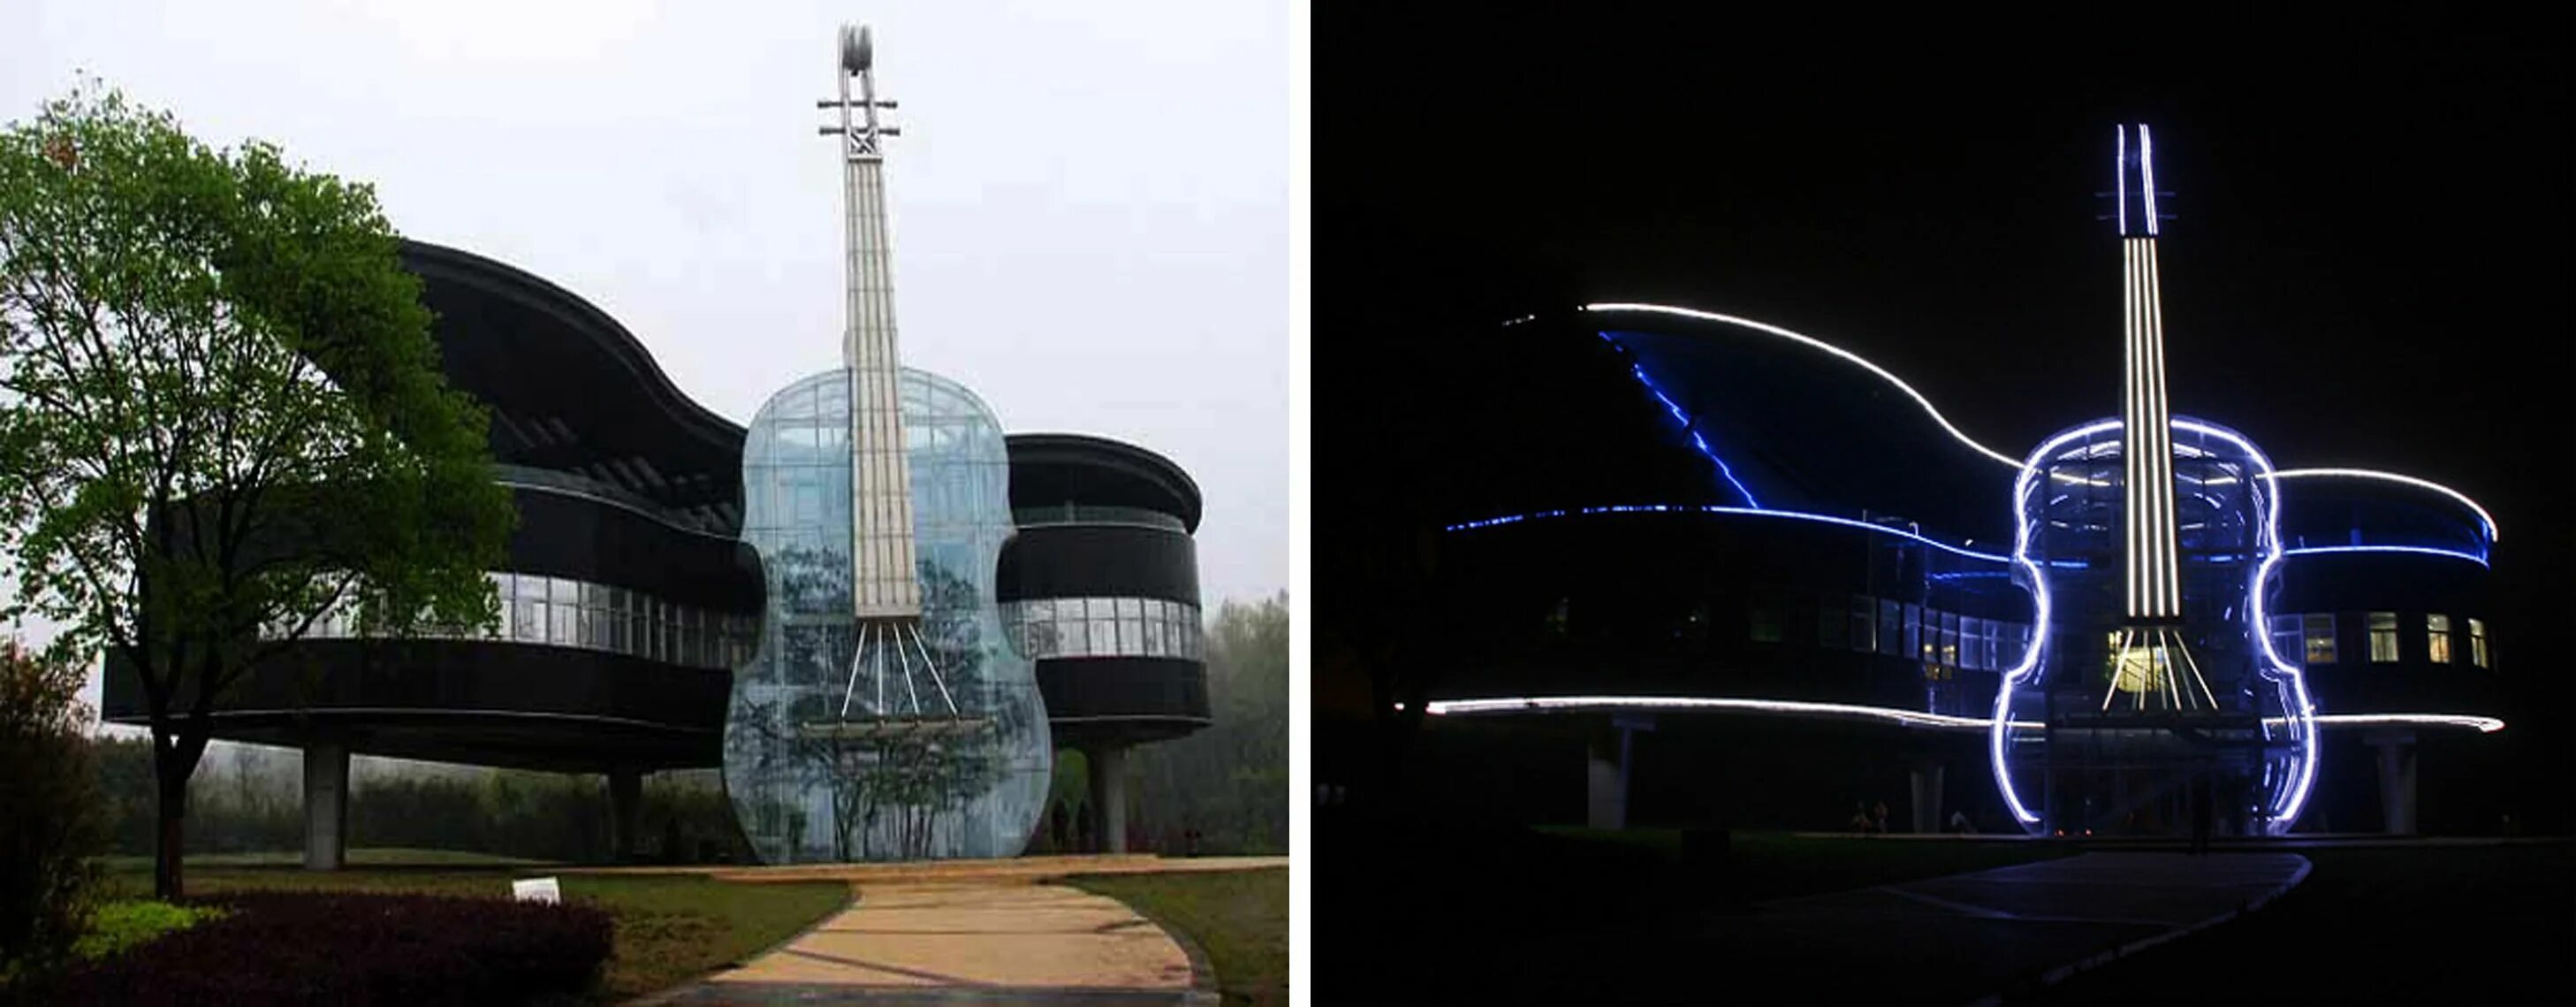 Выставочный центр Piano House, Хуайнань, Китай. Дом-рояль со скрипкой, Хуайнань, Китай. Музыкальное здание Хуайнань Китай Архитектор. Дом-рояль в провинции Аньхой, Китай.